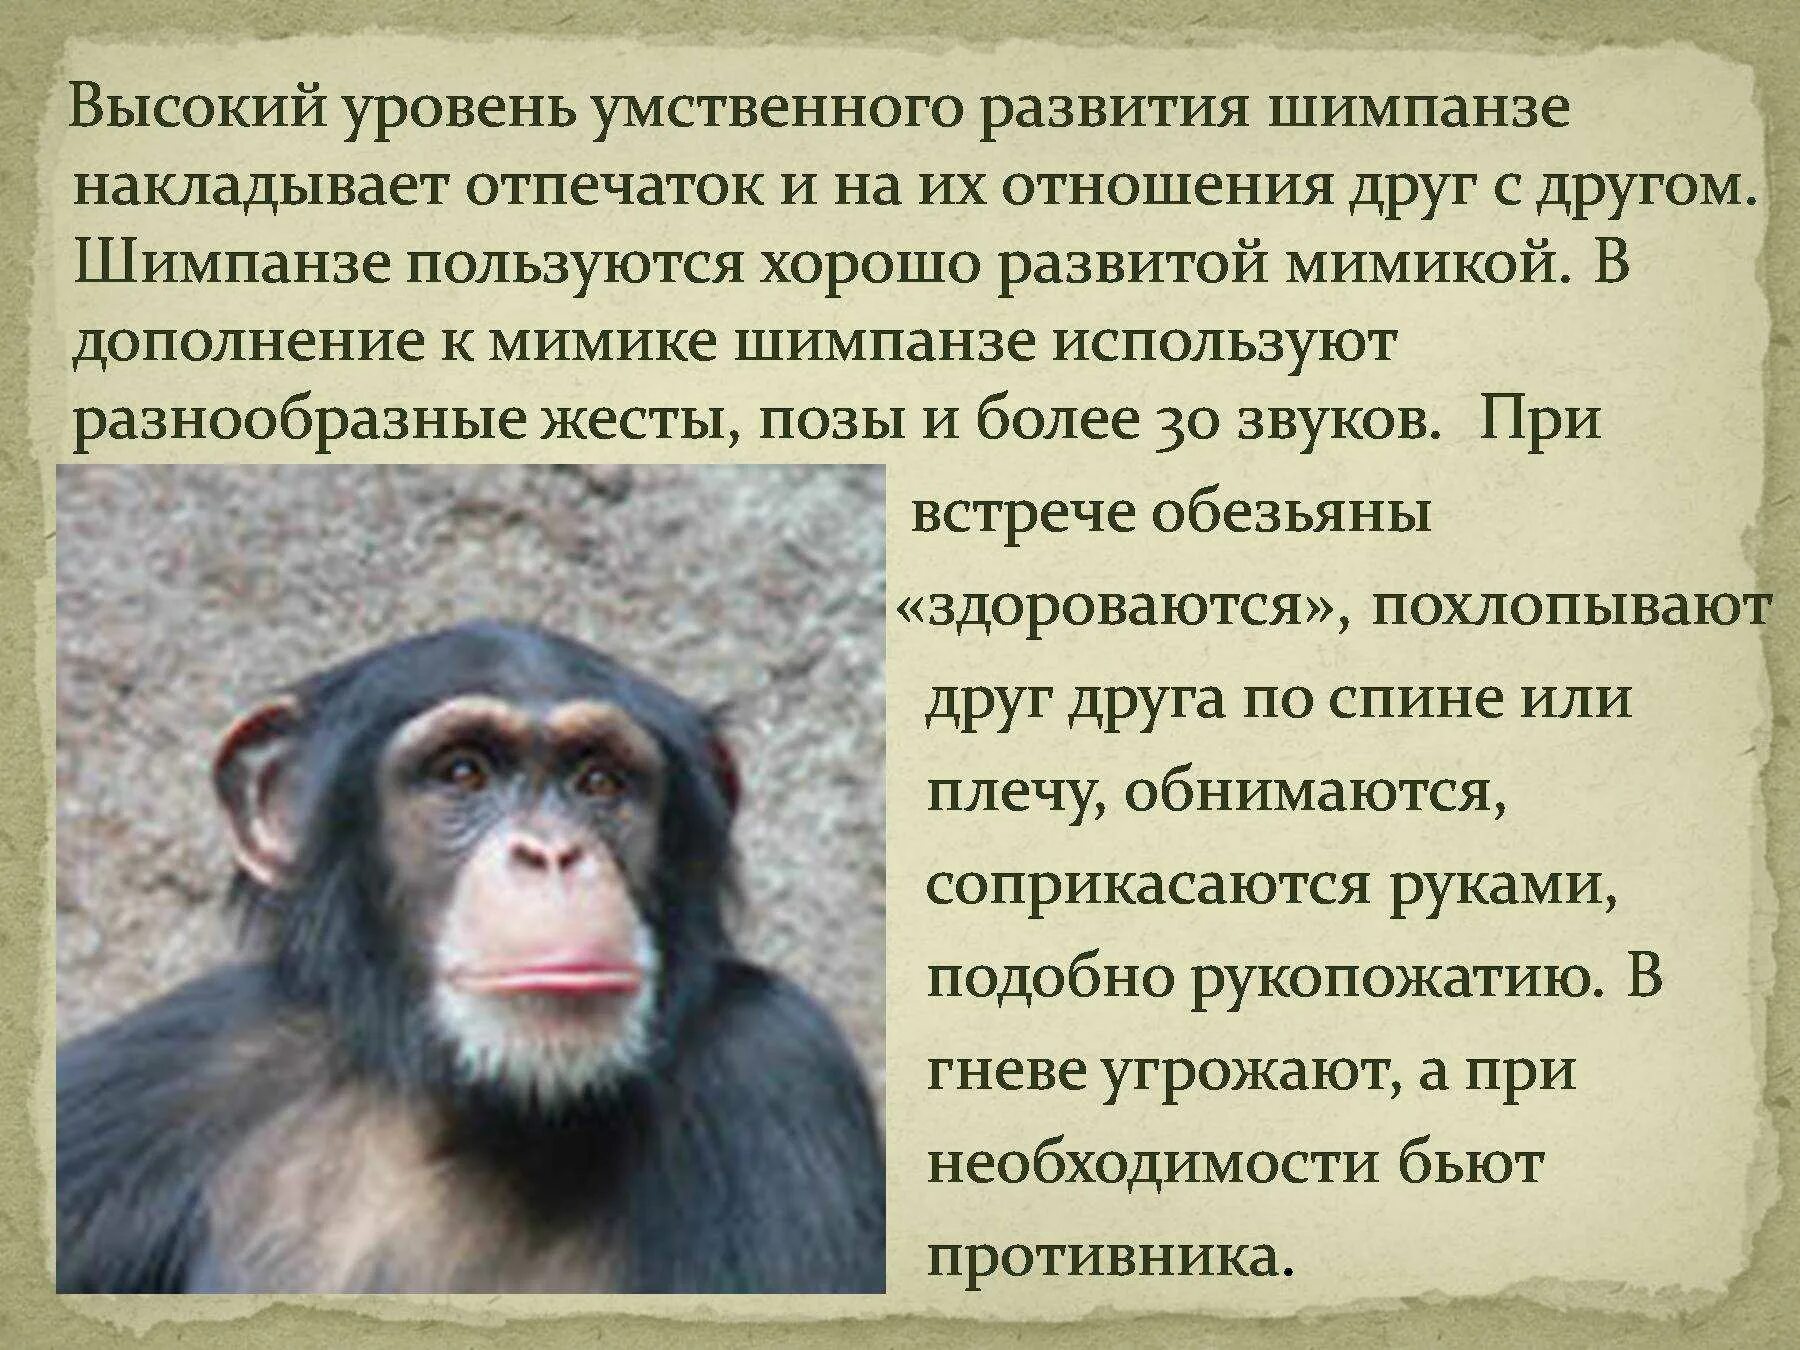 Интересные факты про обезьян. Описание обезьяны. Интересные факты о шимпанзе. Статью об обезьянах. Статья об обезьянах в энциклопедии 3